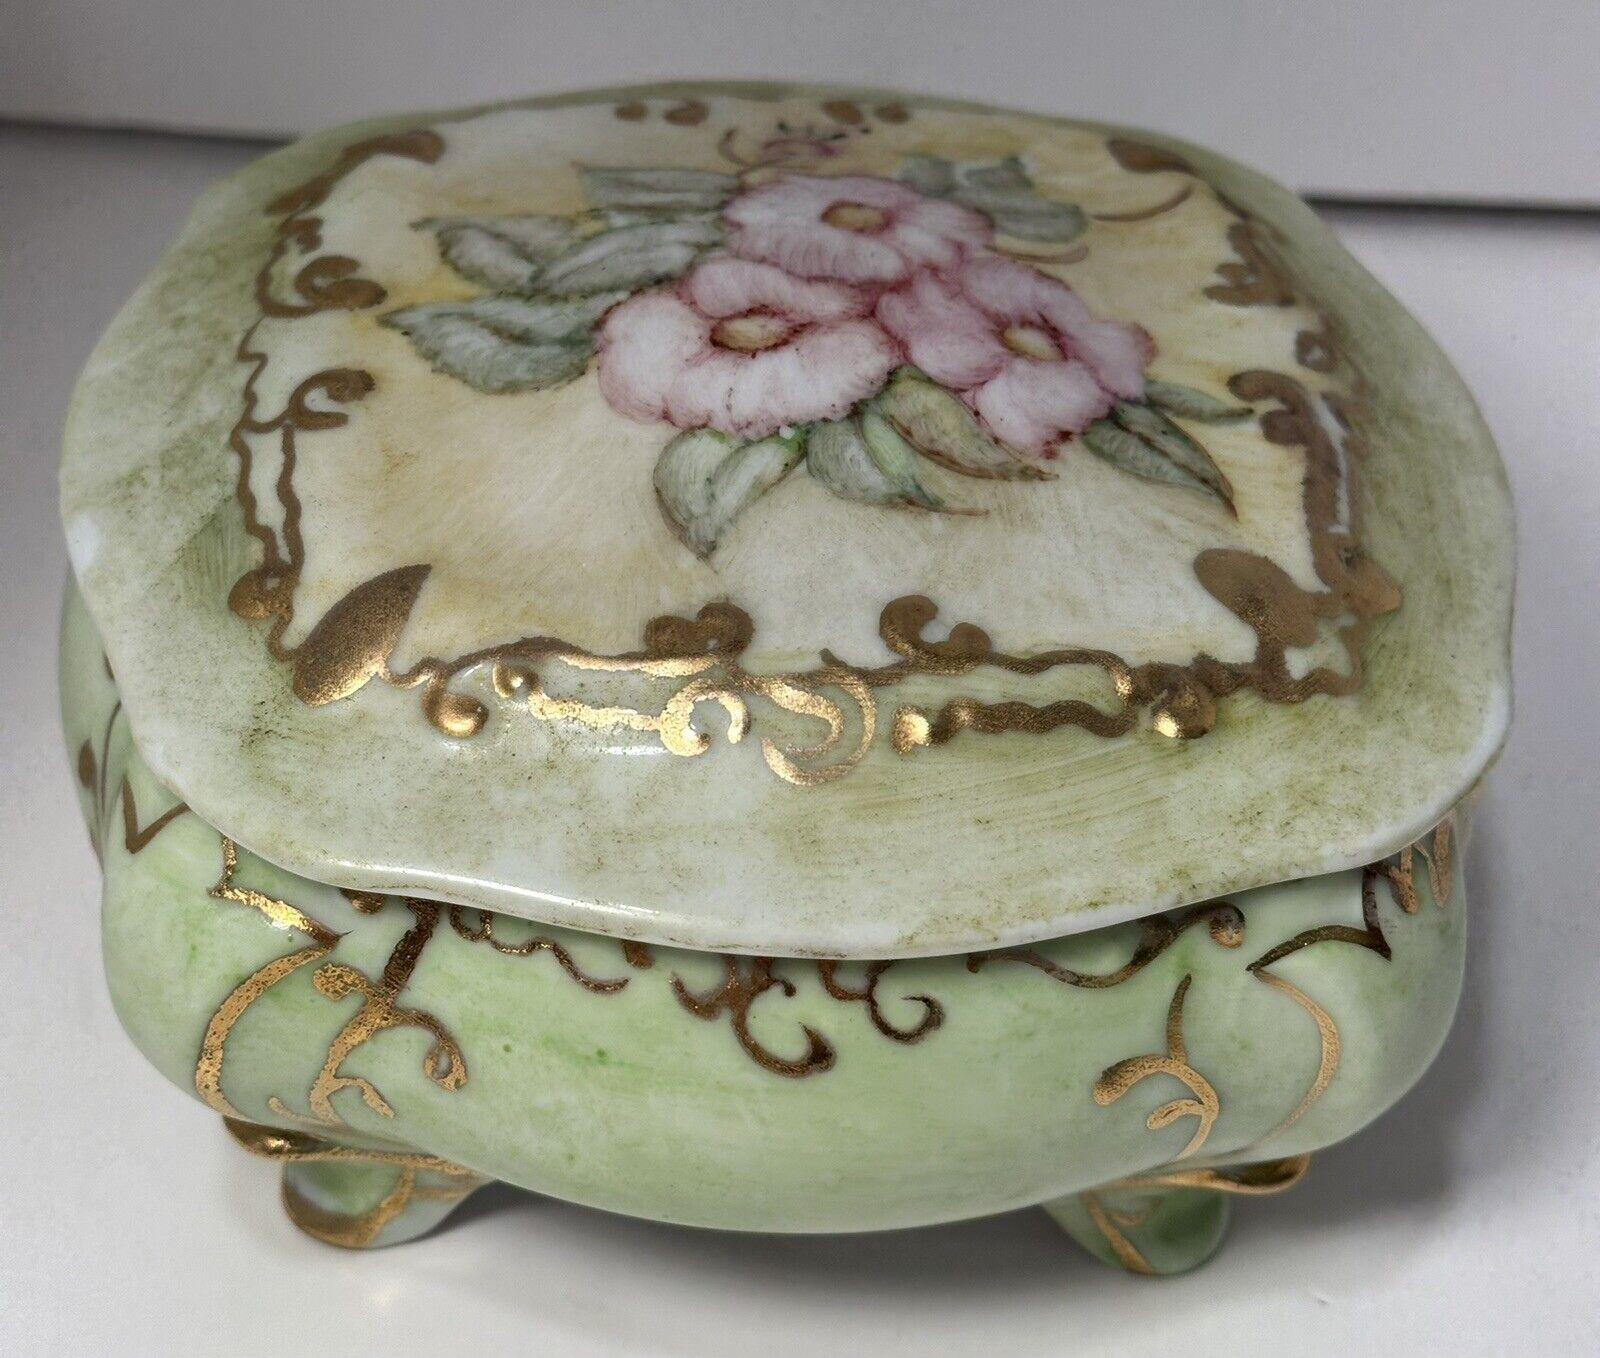 Vintage Porcelain Hand Painted Dresser Vanity Trinket Box Signed MP \'63 - Floral